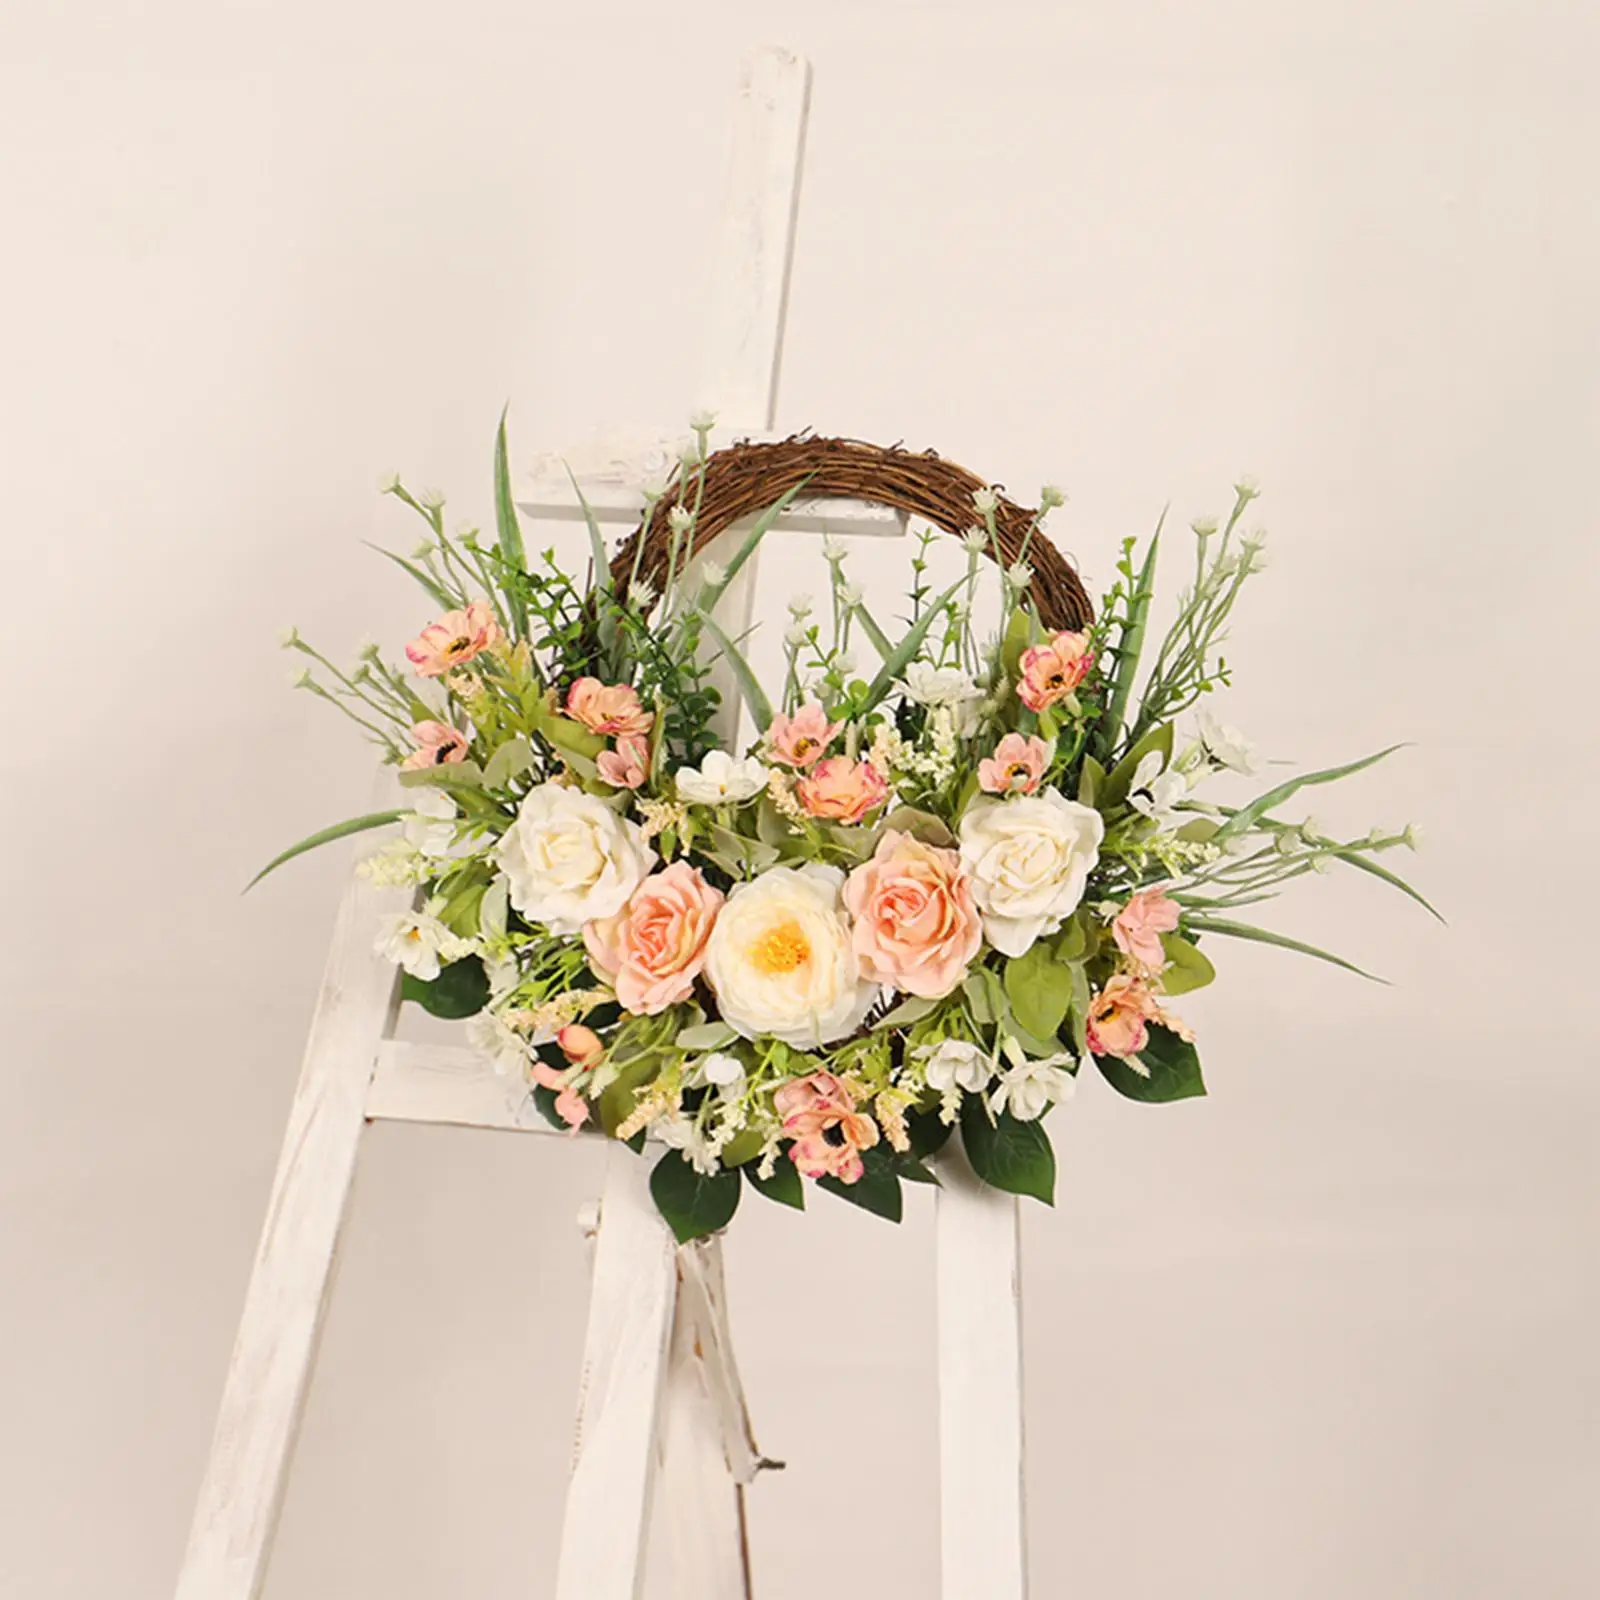 Artificial Flower Wreath Hanging Ornament Garland for Window Wedding Outdoor Indoor